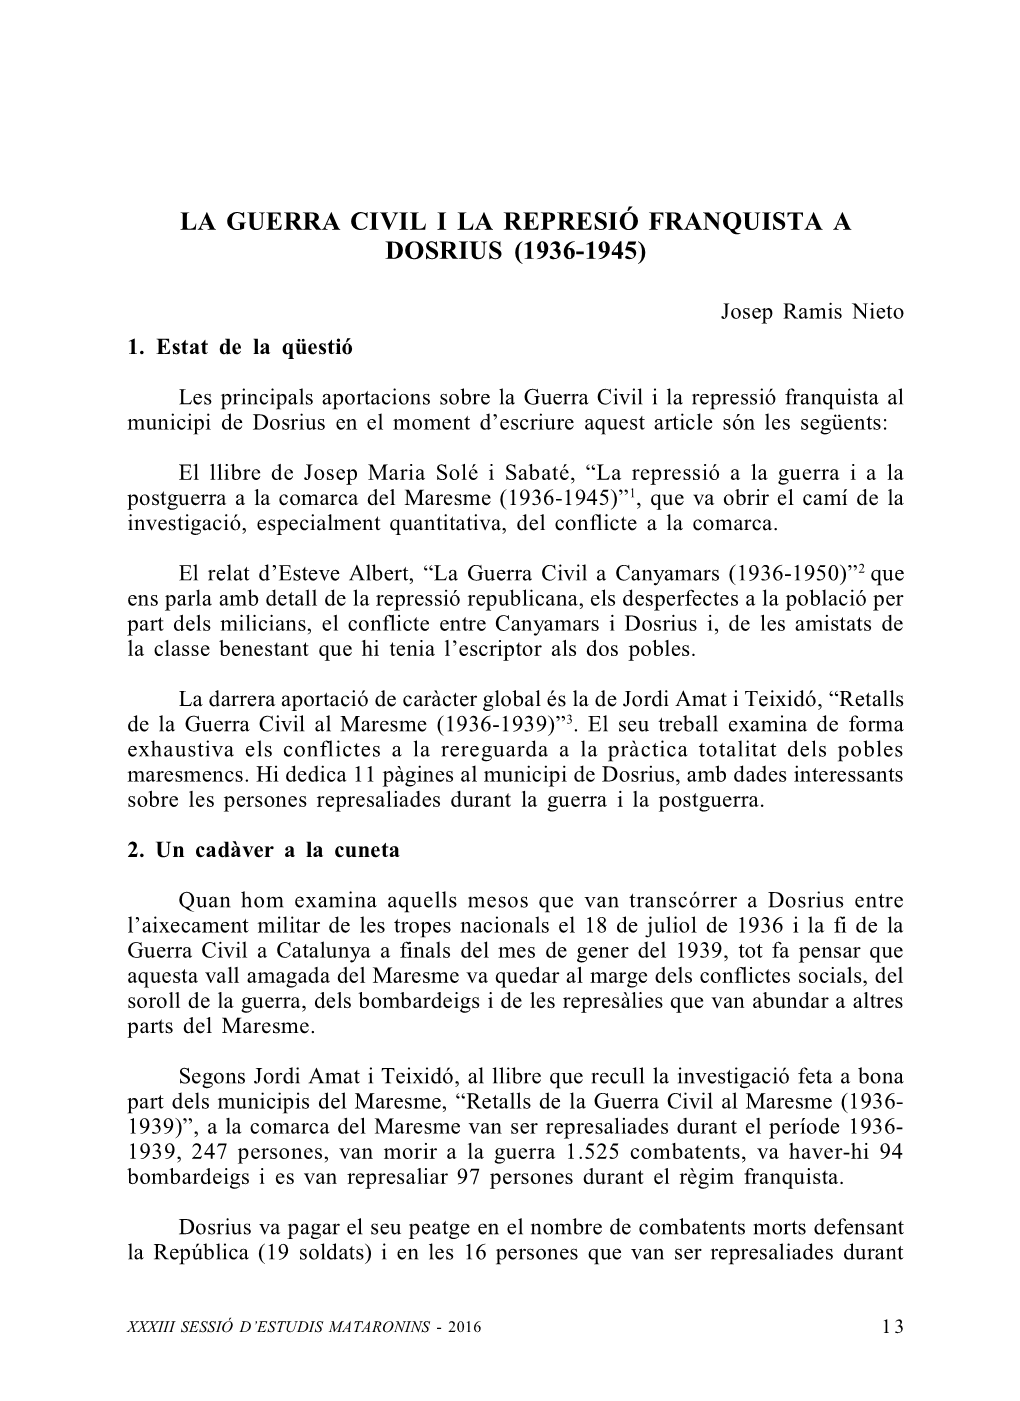 La Guerra Civil I La Represió Franquista a Dosrius (1936-1945)